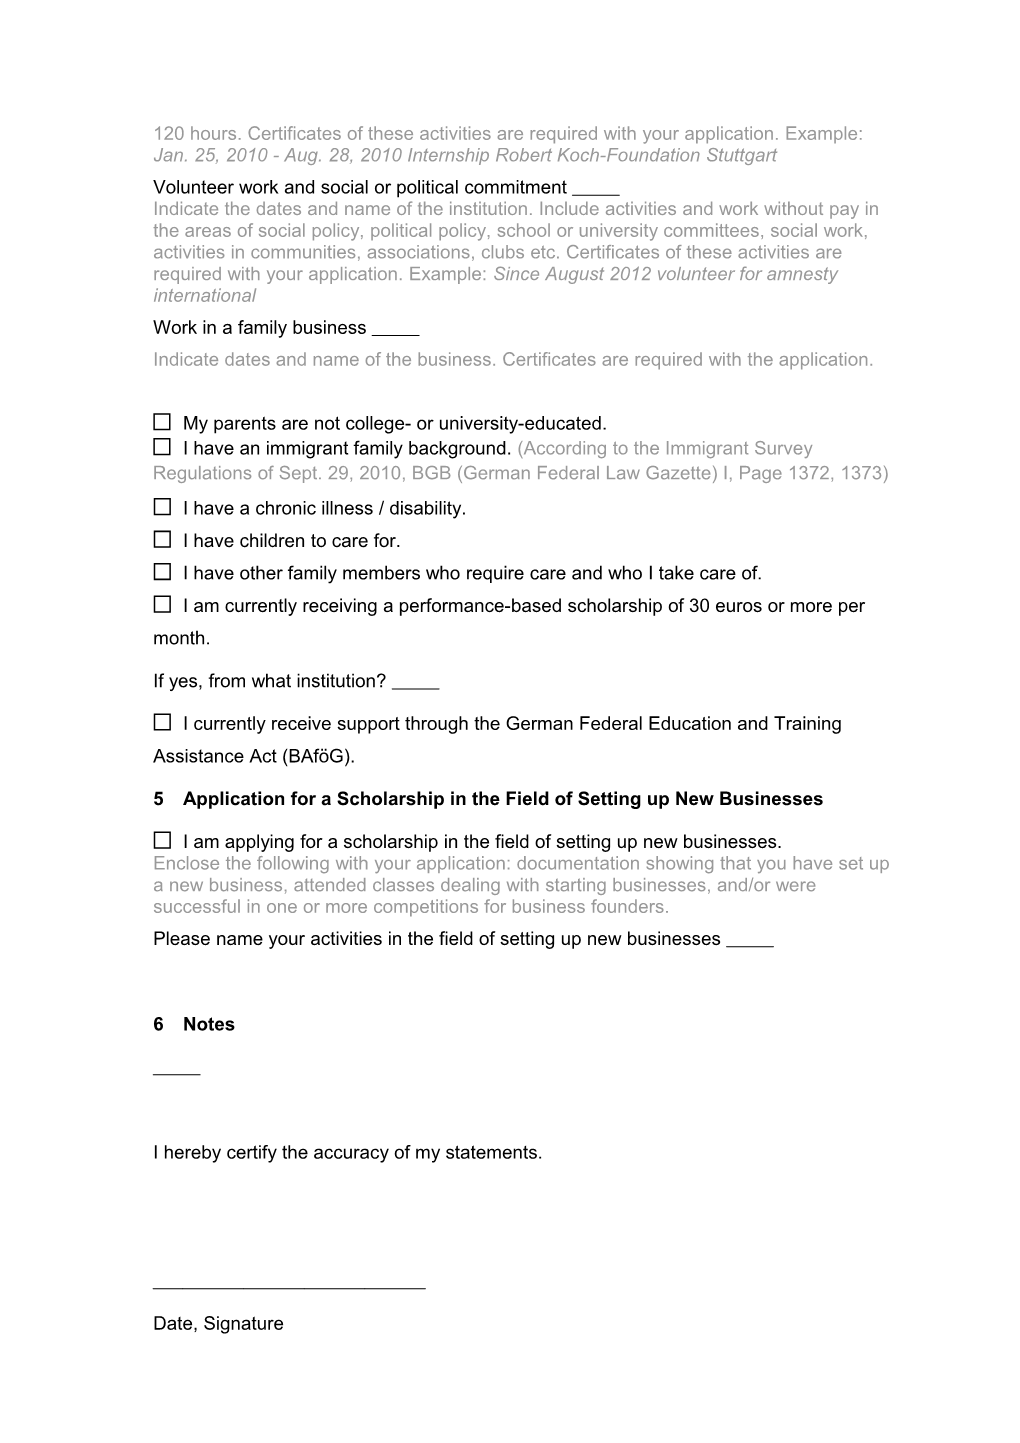 Application Form for the Deutschlandstipendium at Freie Universität Berlin in the Funding